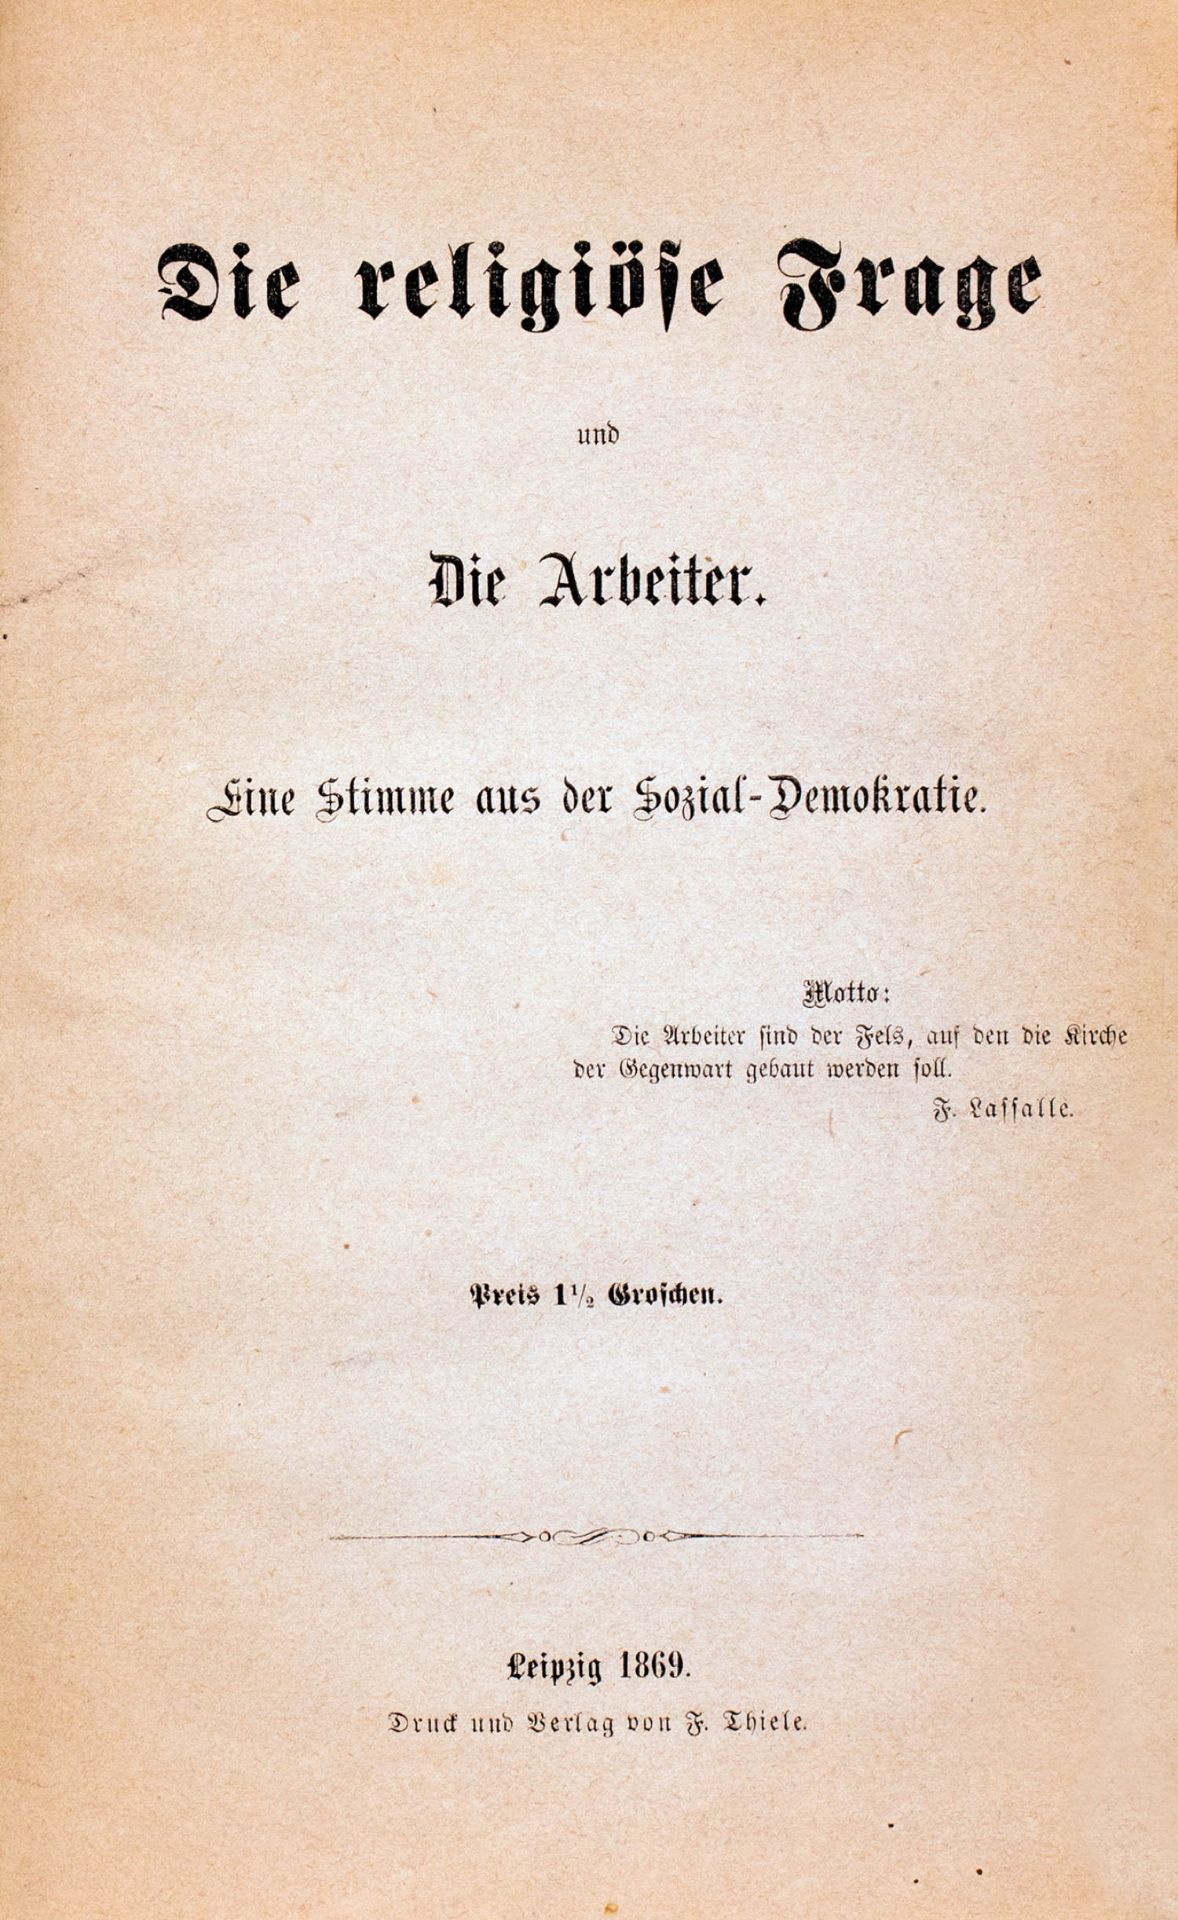 Deutsche Sozialdemokratie - Sammelband aus dem Gründungsjahr. - Bild 2 aus 4